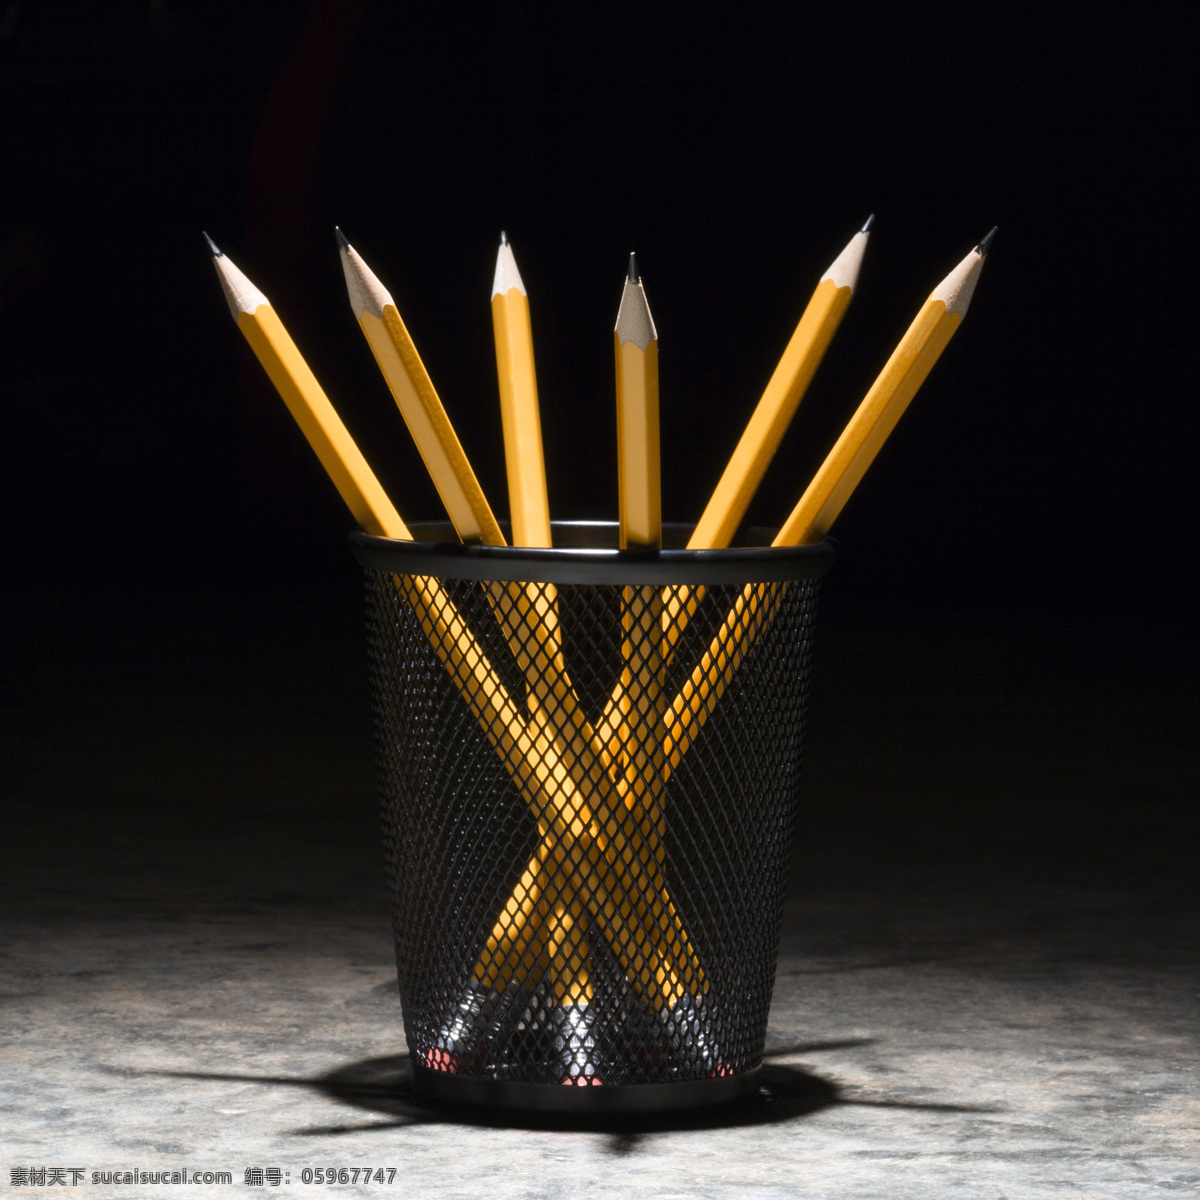 铅笔 笔筒 铅笔笔筒 文具 削好的铅笔 生活用品 生活素材 生活百科 办公学习